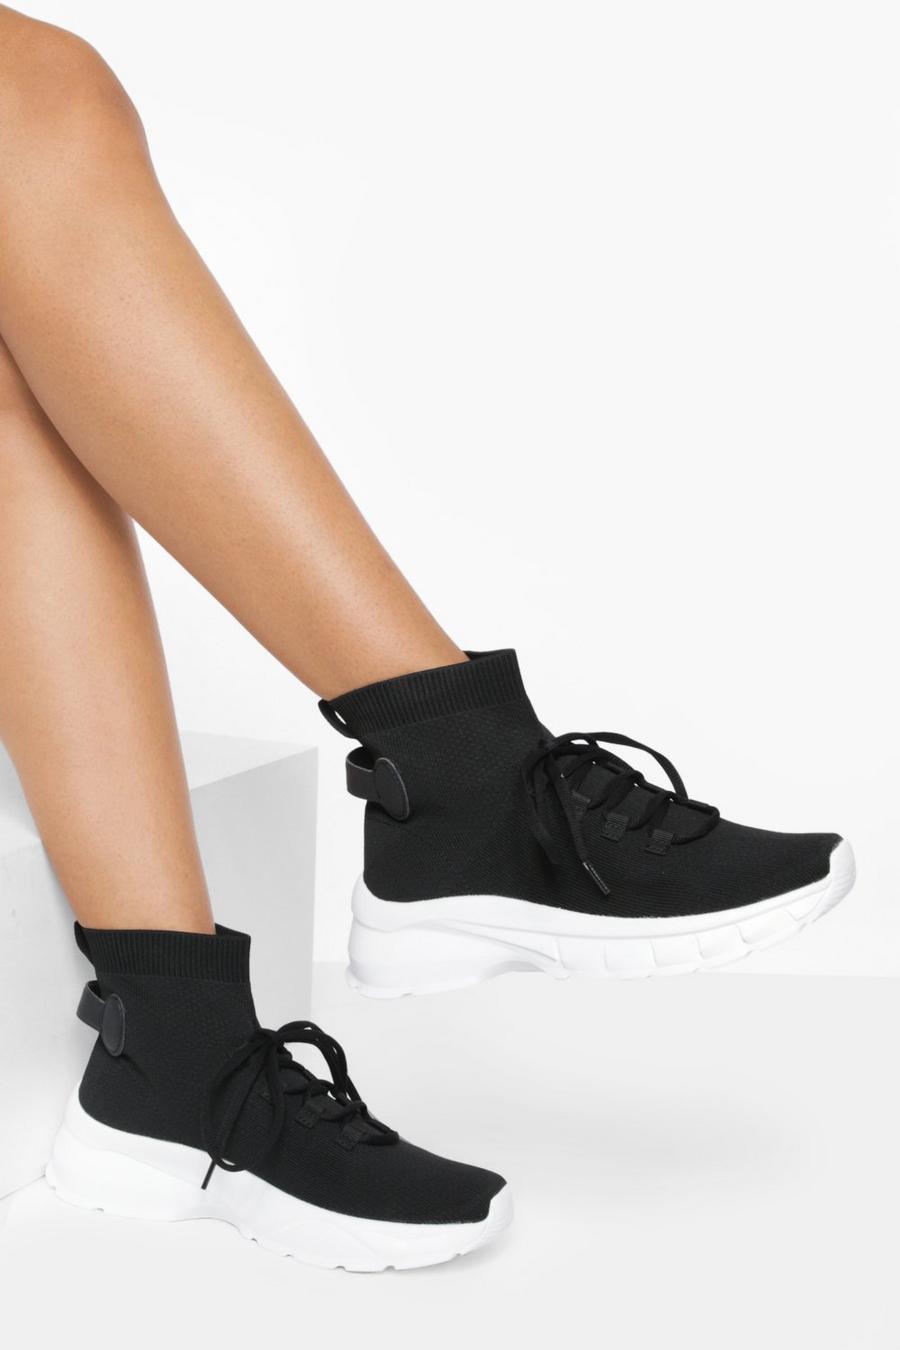 Zapatillas deportivas calcetín con cordones cruzados, Black nero image number 1